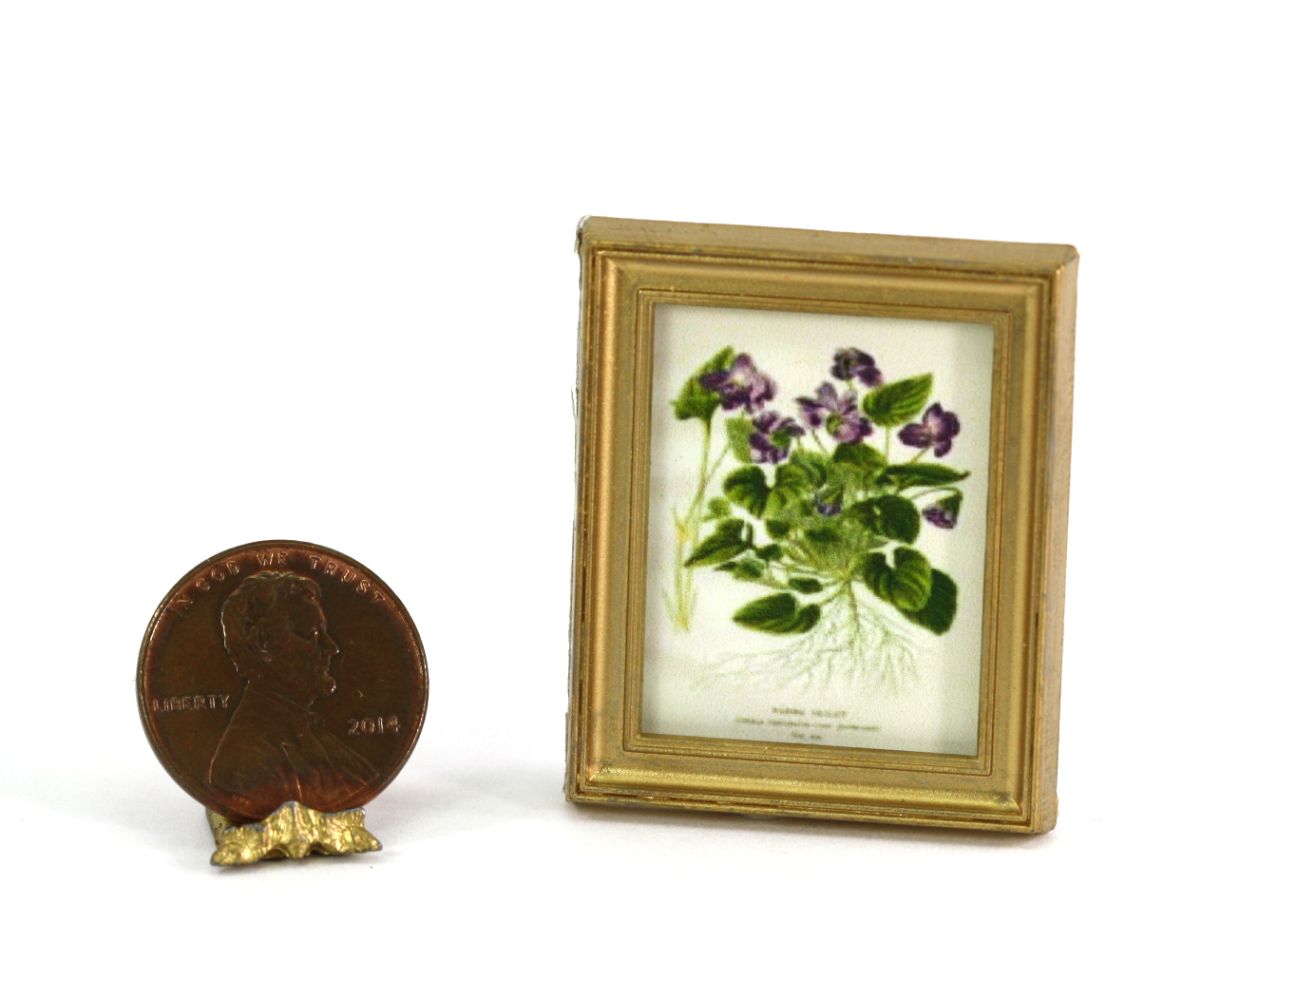 Gold Framed Print of a Vintage Style Purple Botanical Illustration